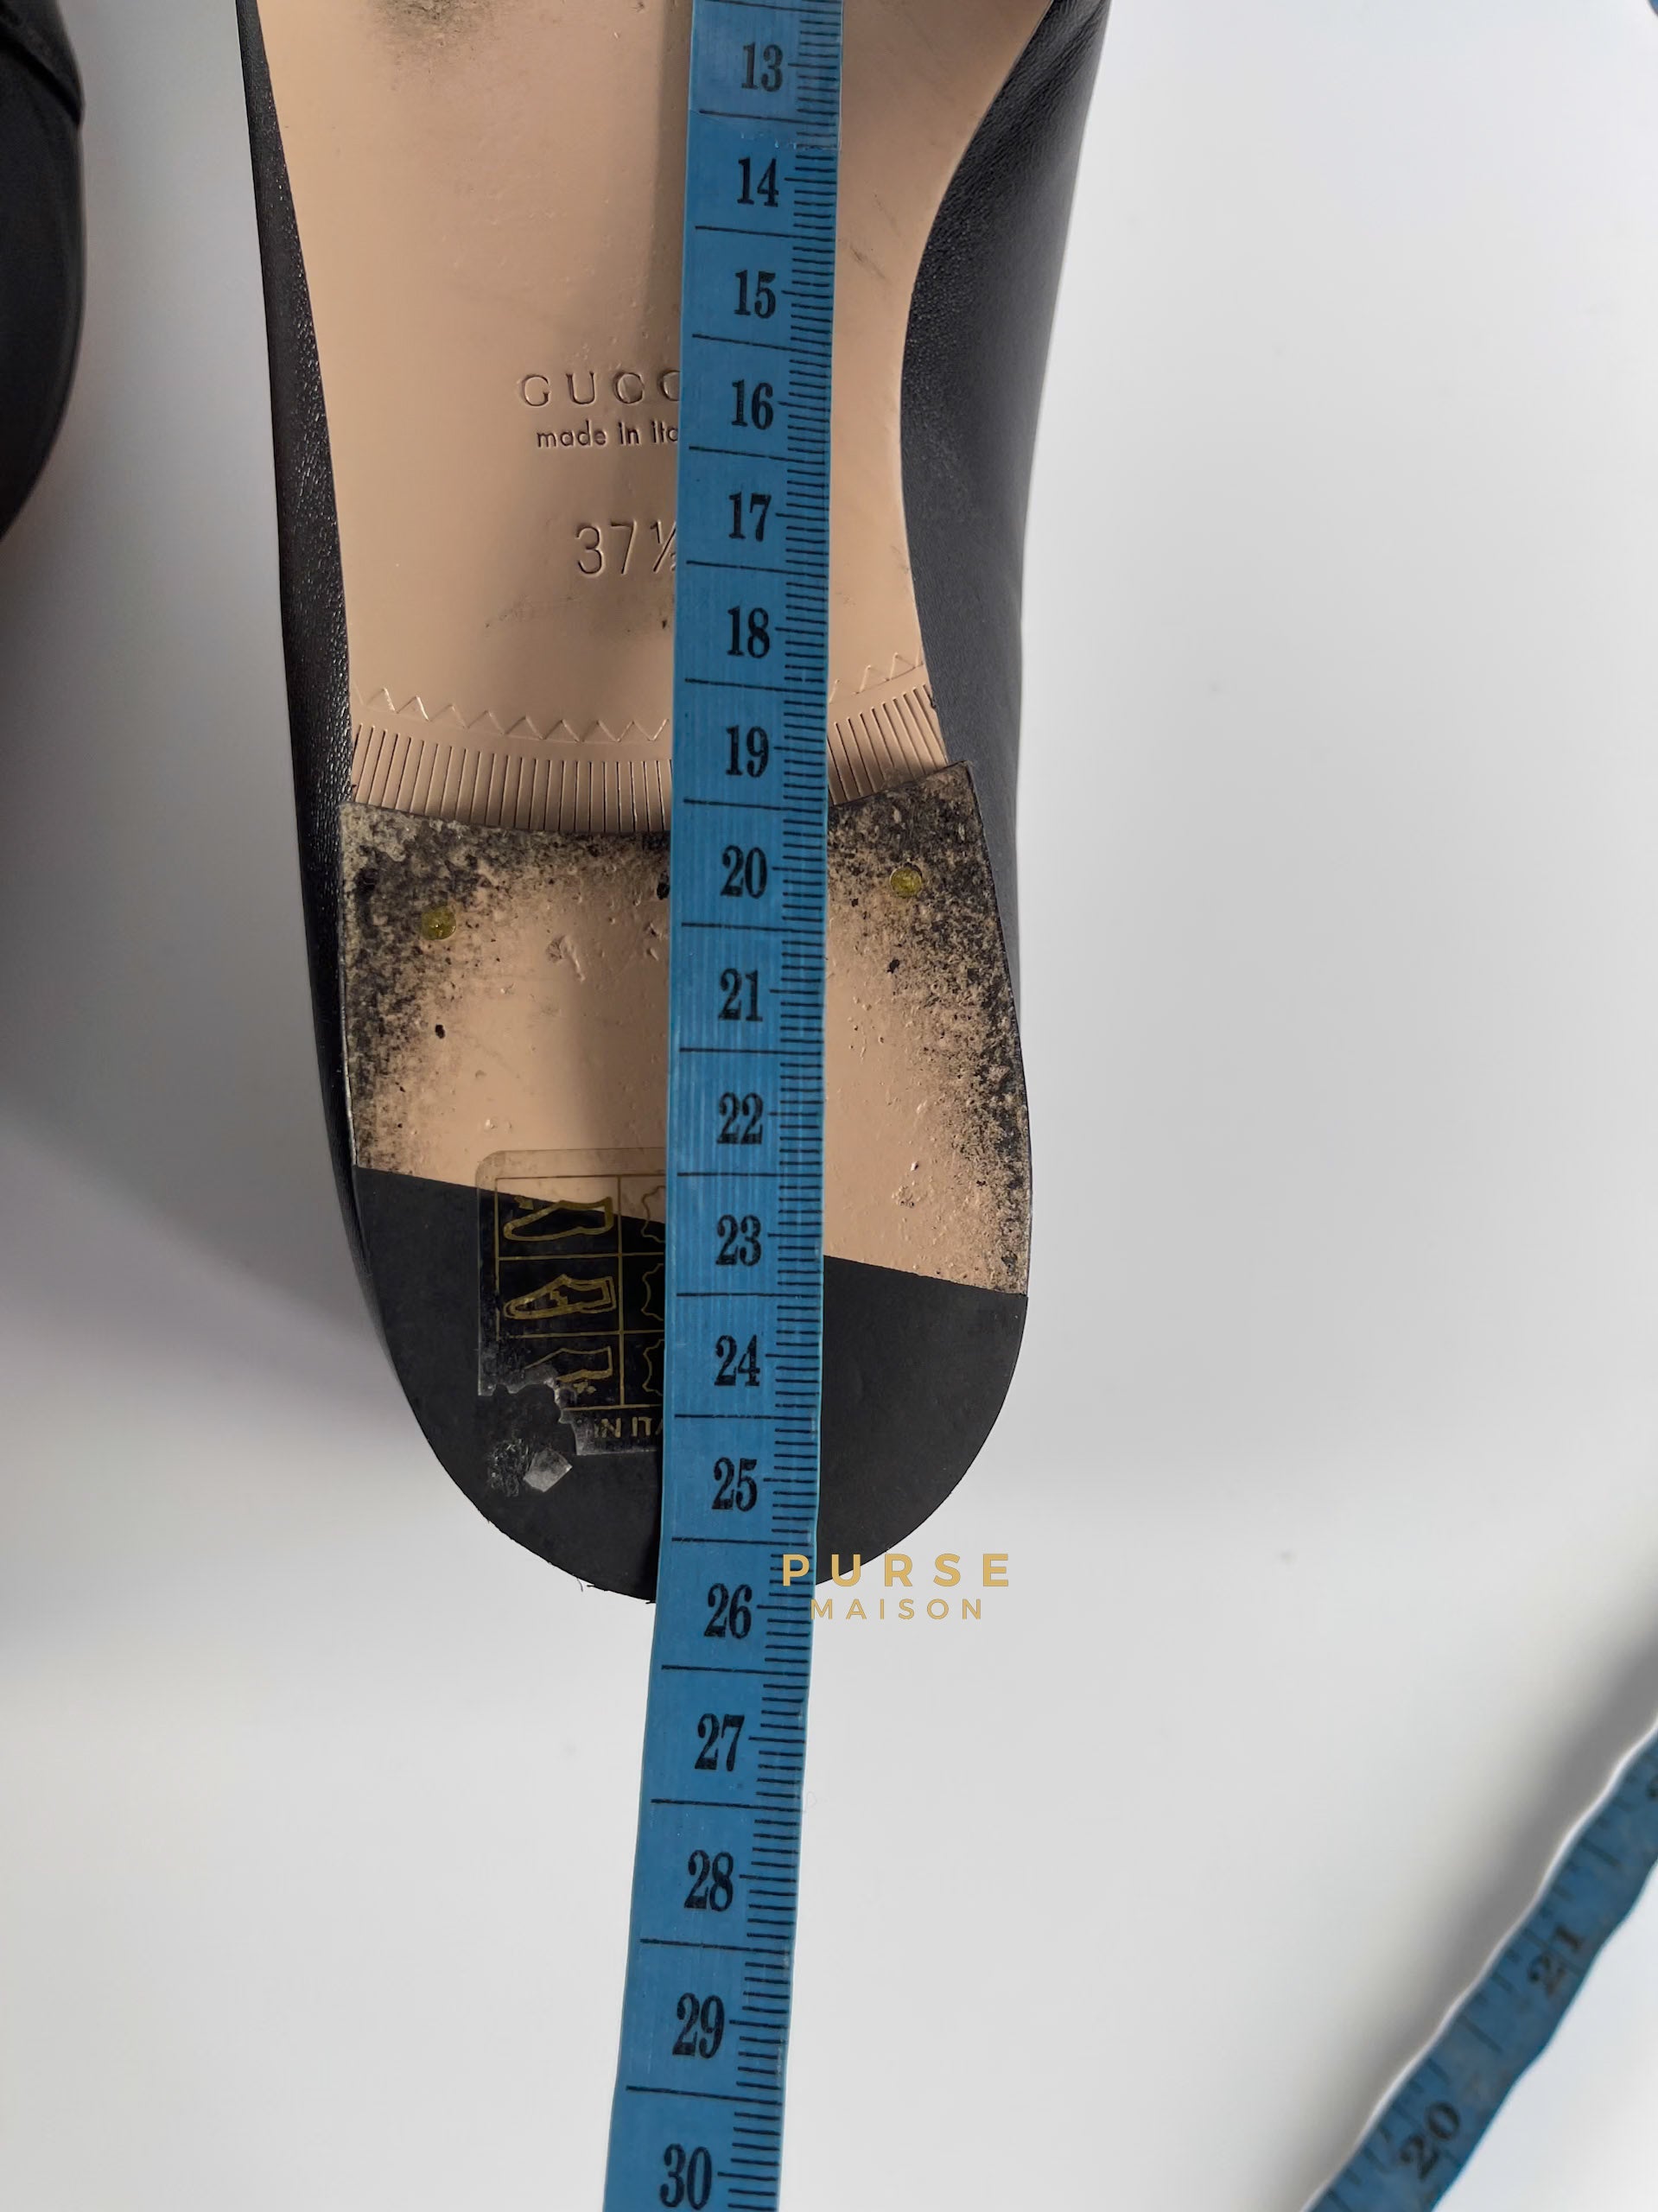 GG Black Marmont Leather Logo Ballet Shoes Size 37.5 EU, 24.5cm) | Purse Maison Luxury Bags Shop